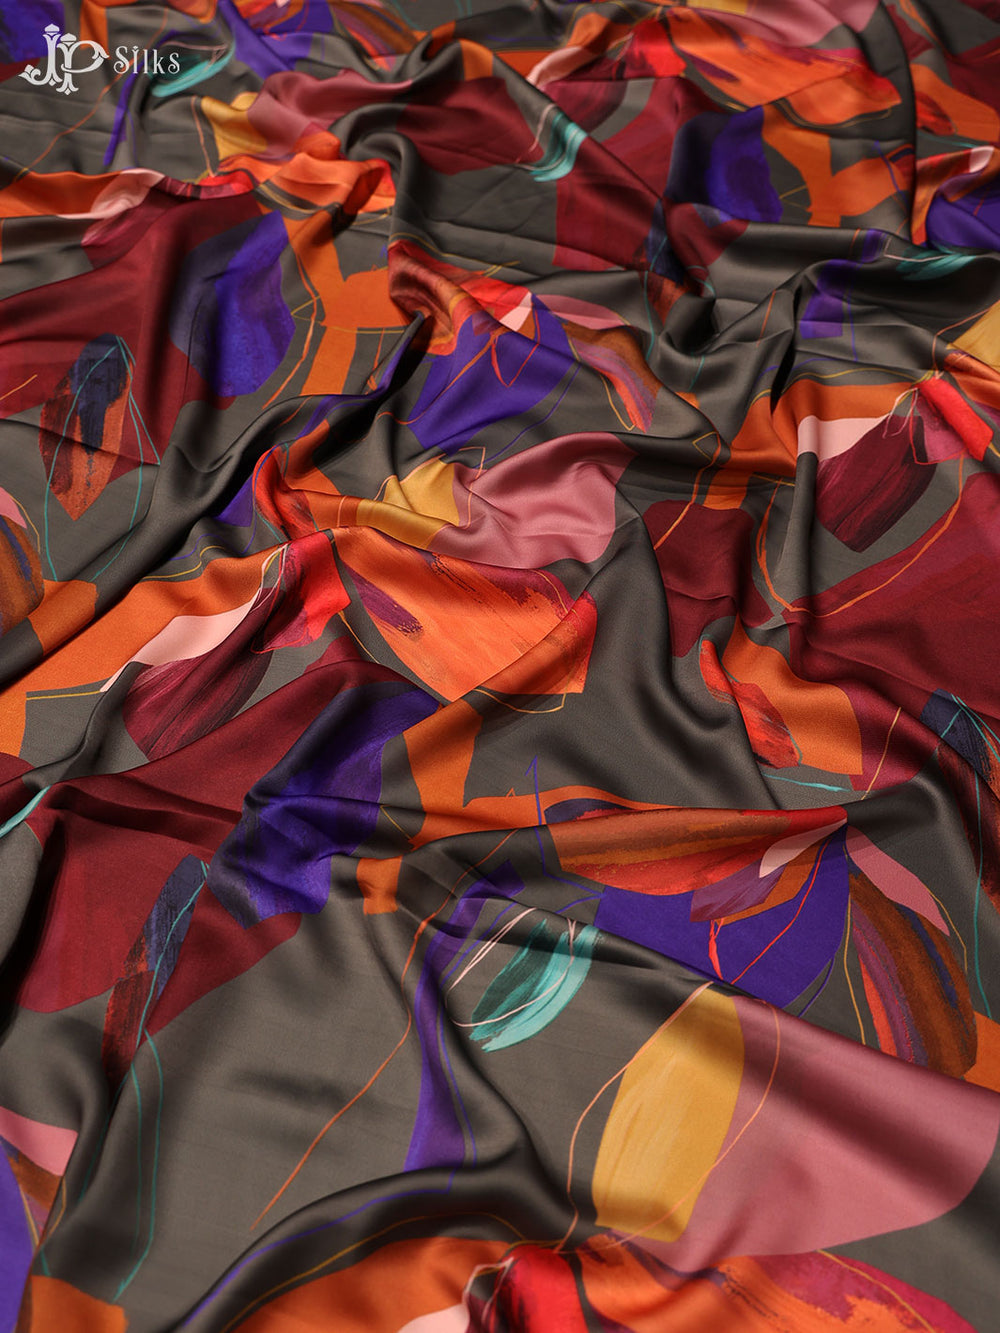 Multicolor Digita l Printed Crepe Fabric - E3316 - View 1